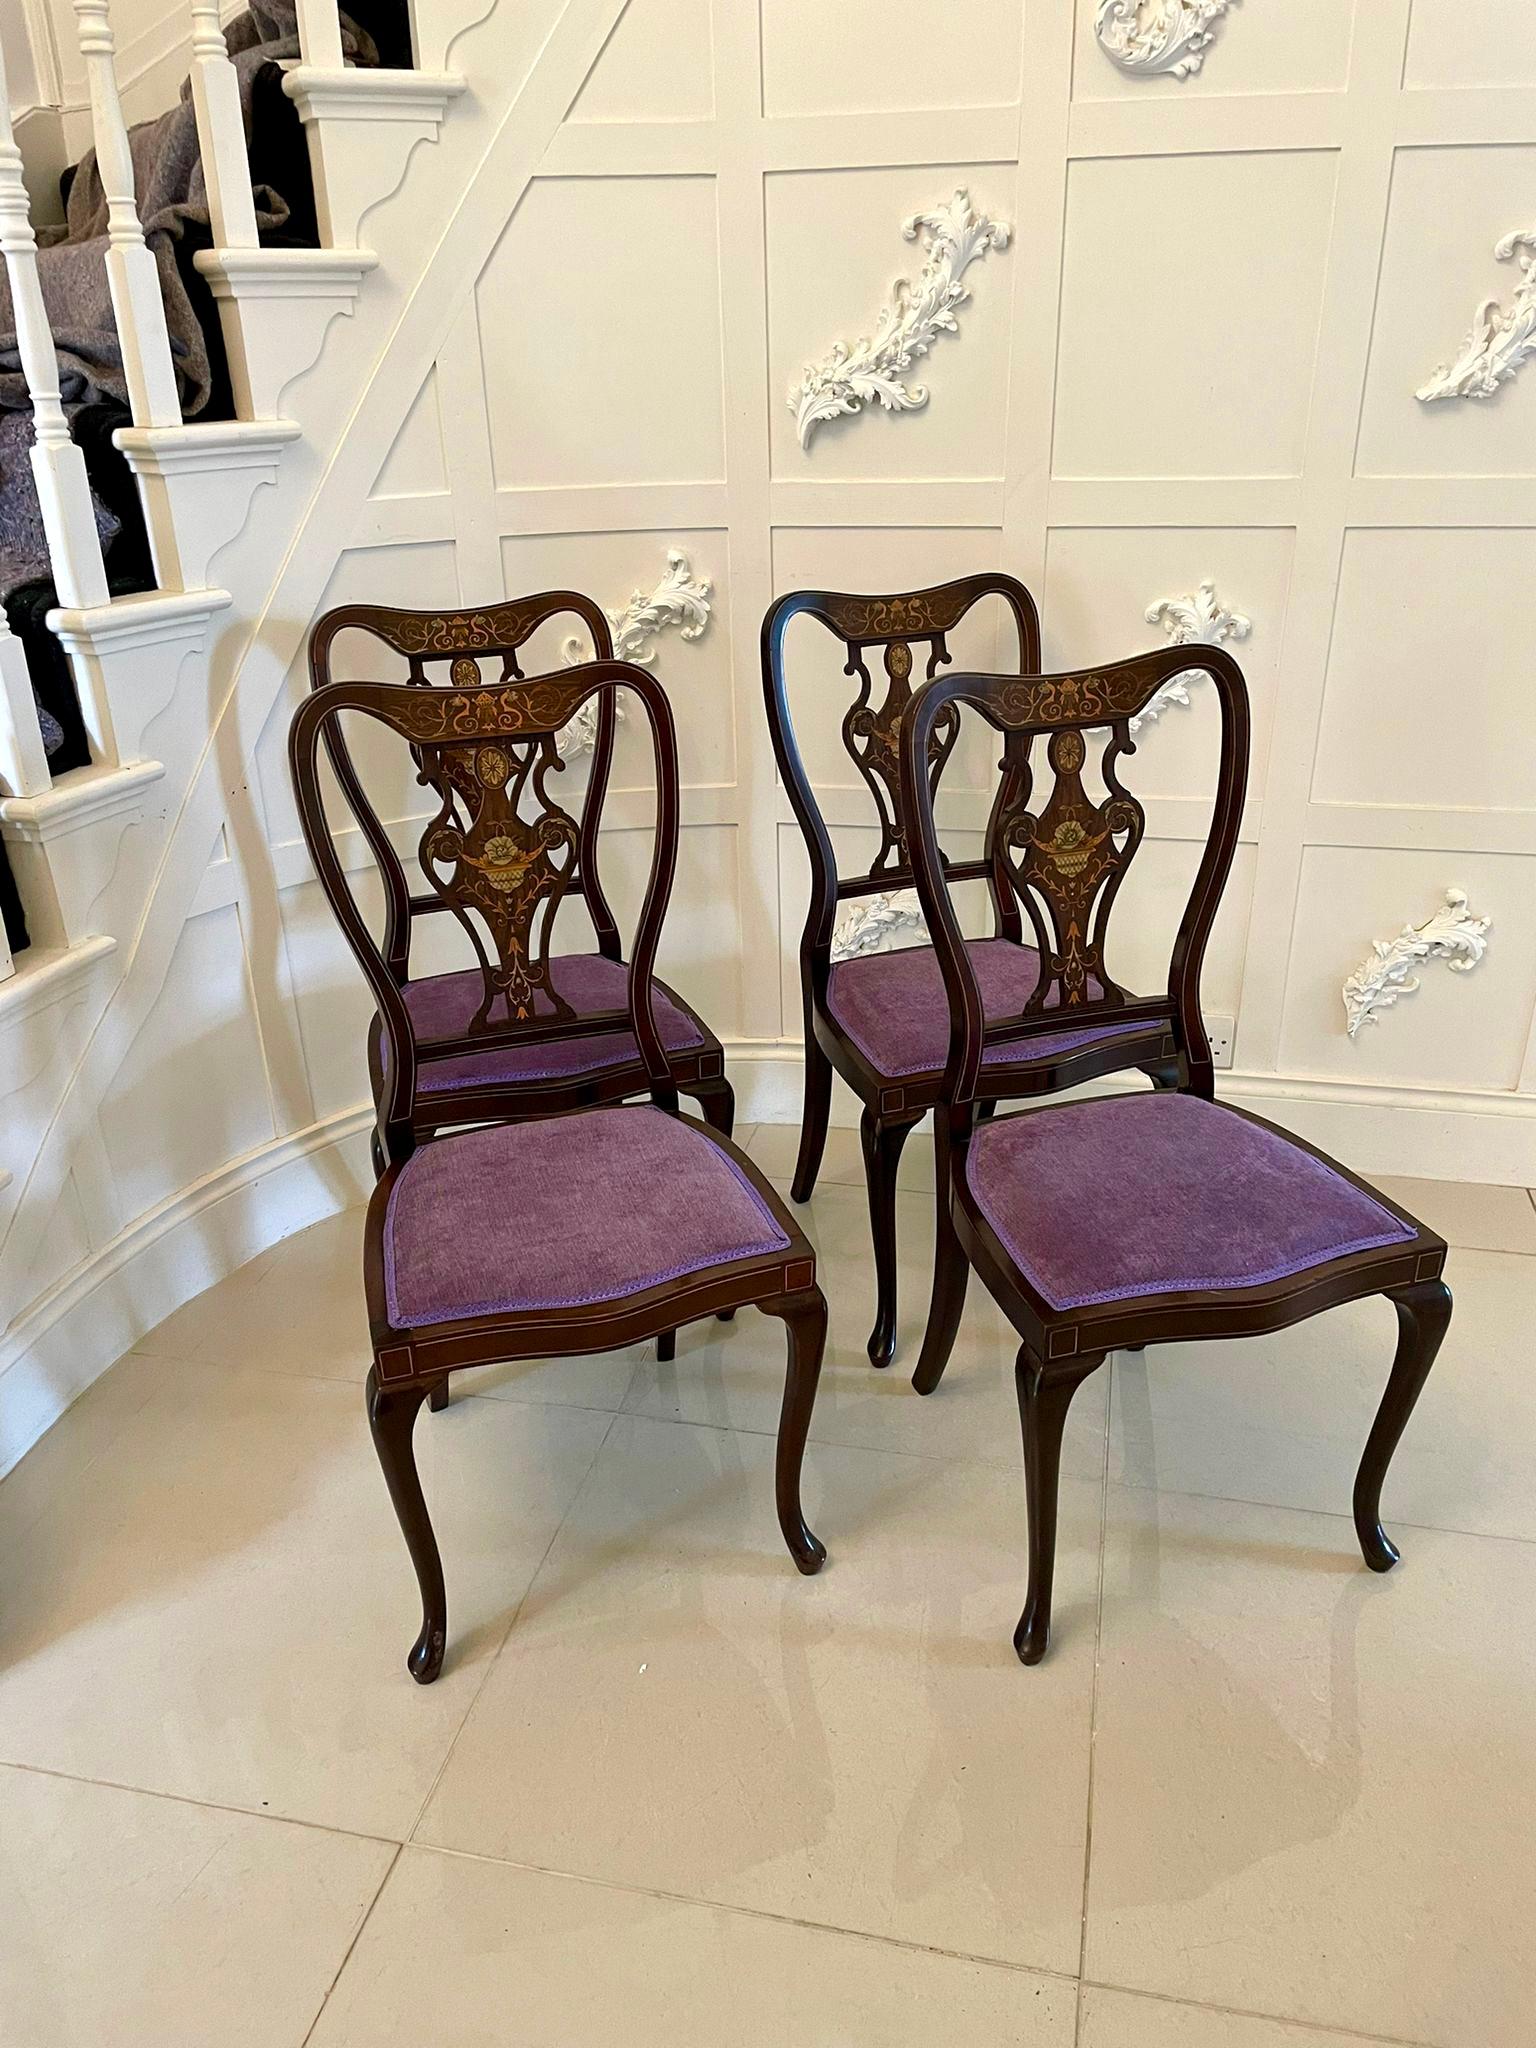 Feine Qualität antiken viktorianischen Satz von vier Intarsien Stühle mit hübschen geformten Rückenlehnen mit feinen Qualität Intarsien, neu gepolstert serpentinenförmigen Sitze in einem Qualitätsstoff, eingelegten Fries und stehen auf eleganten